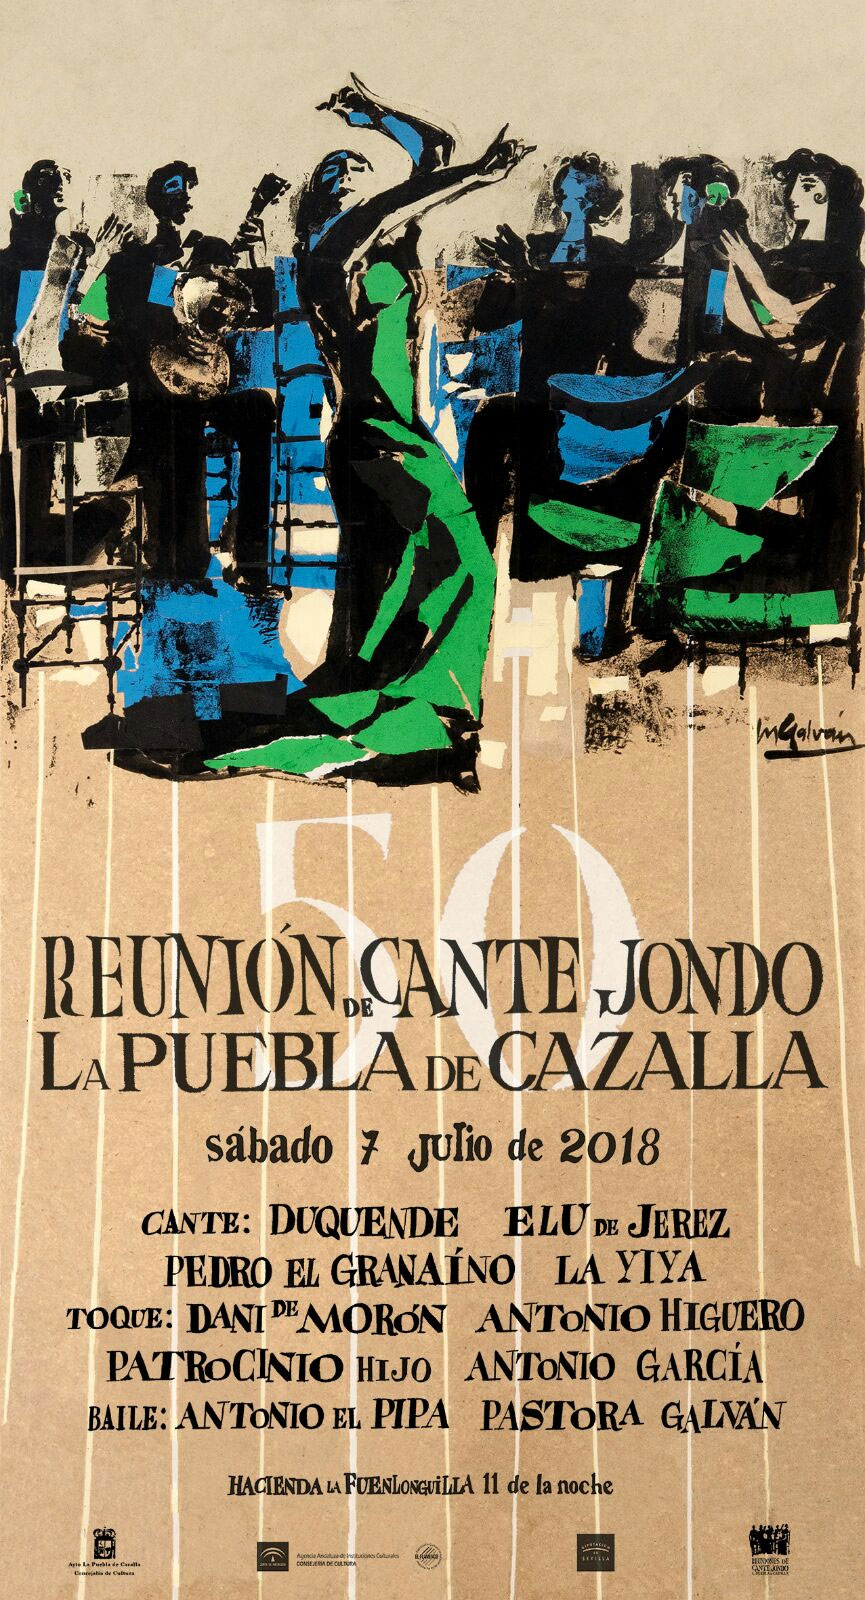 Reunión Cante Jondo 2018 - La Puebla de Cazalla